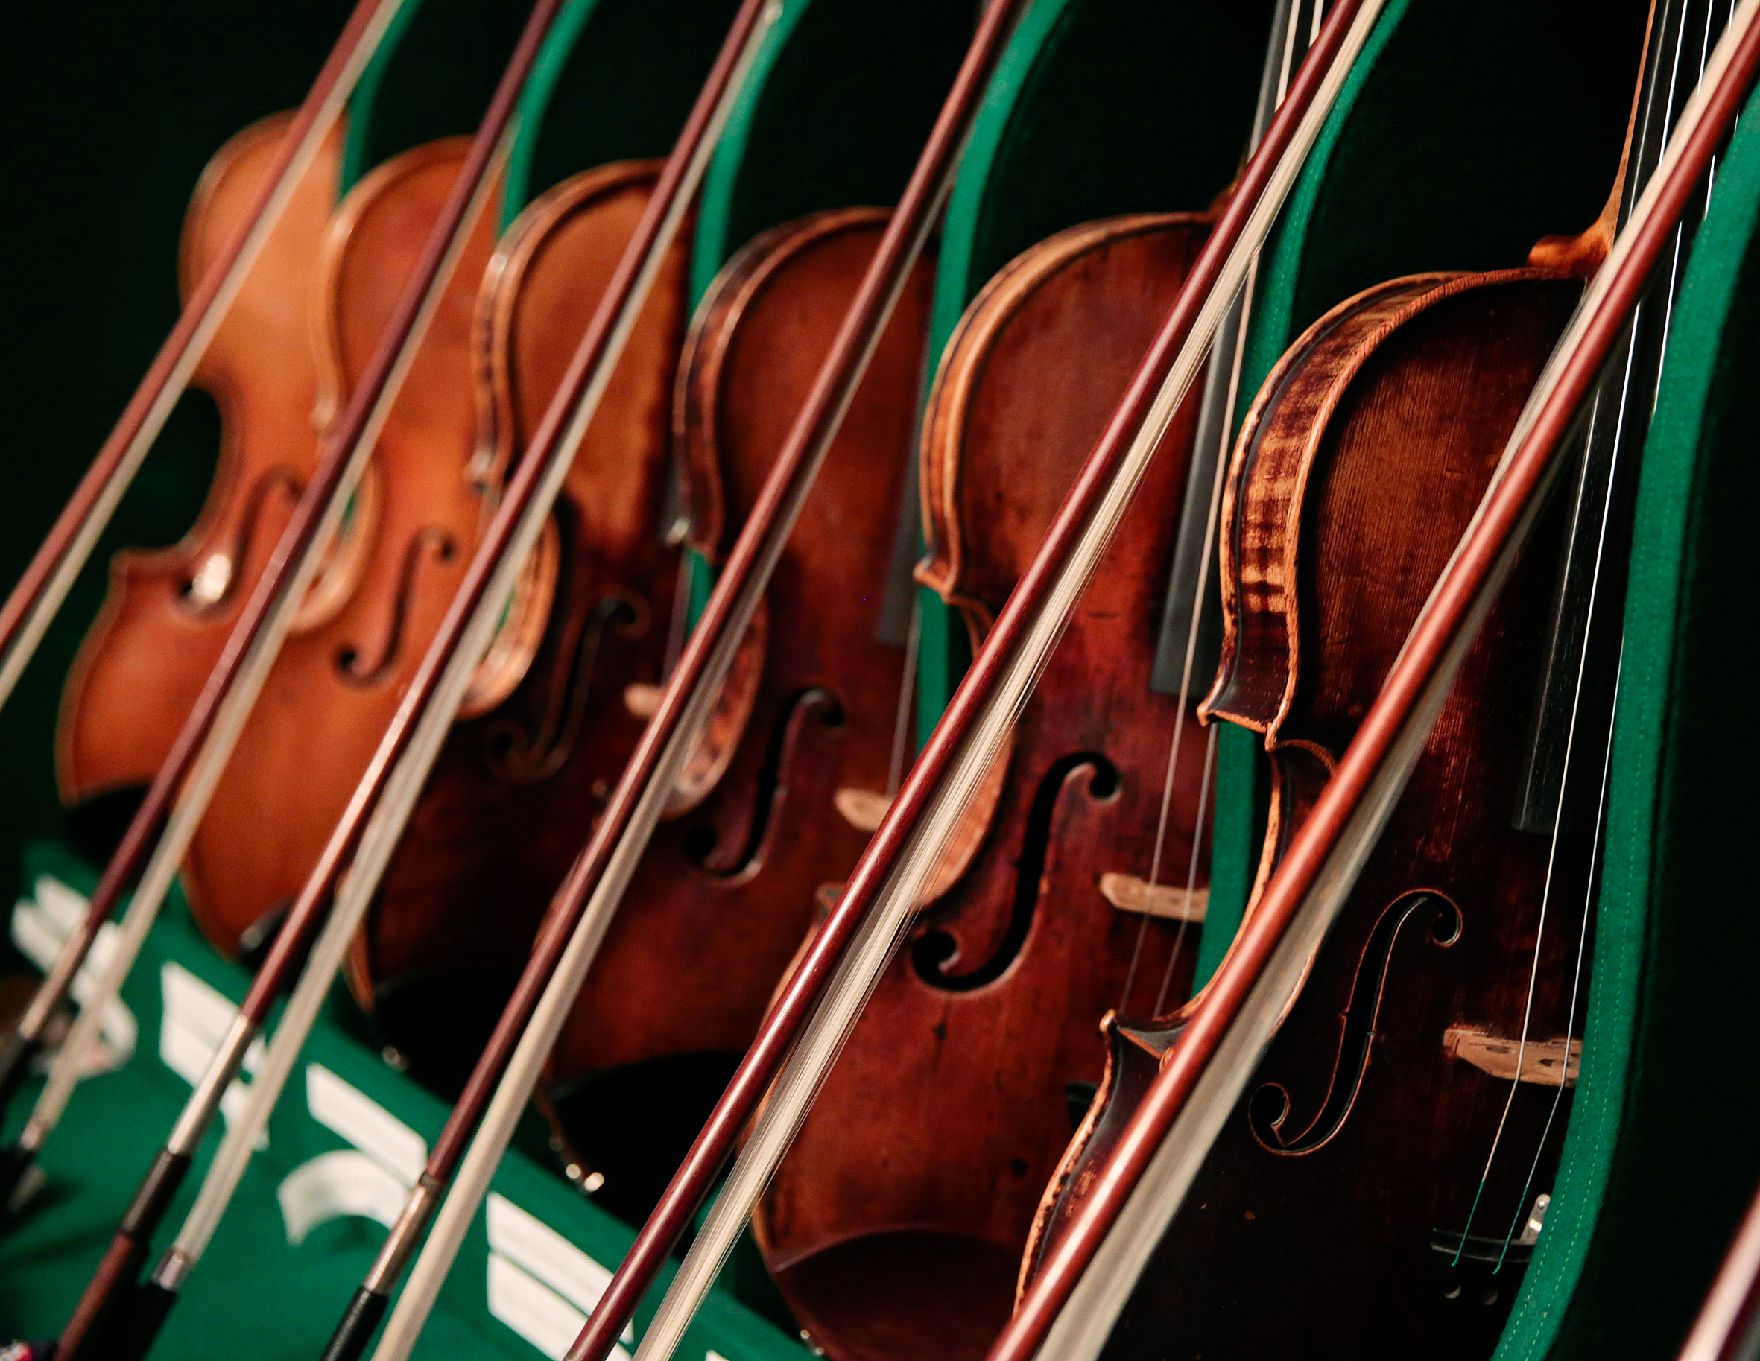 Geigen und Bögen in einer Reihe. Schlagwörter: Geigen, Bögen, Holz, Instrumente, Musik